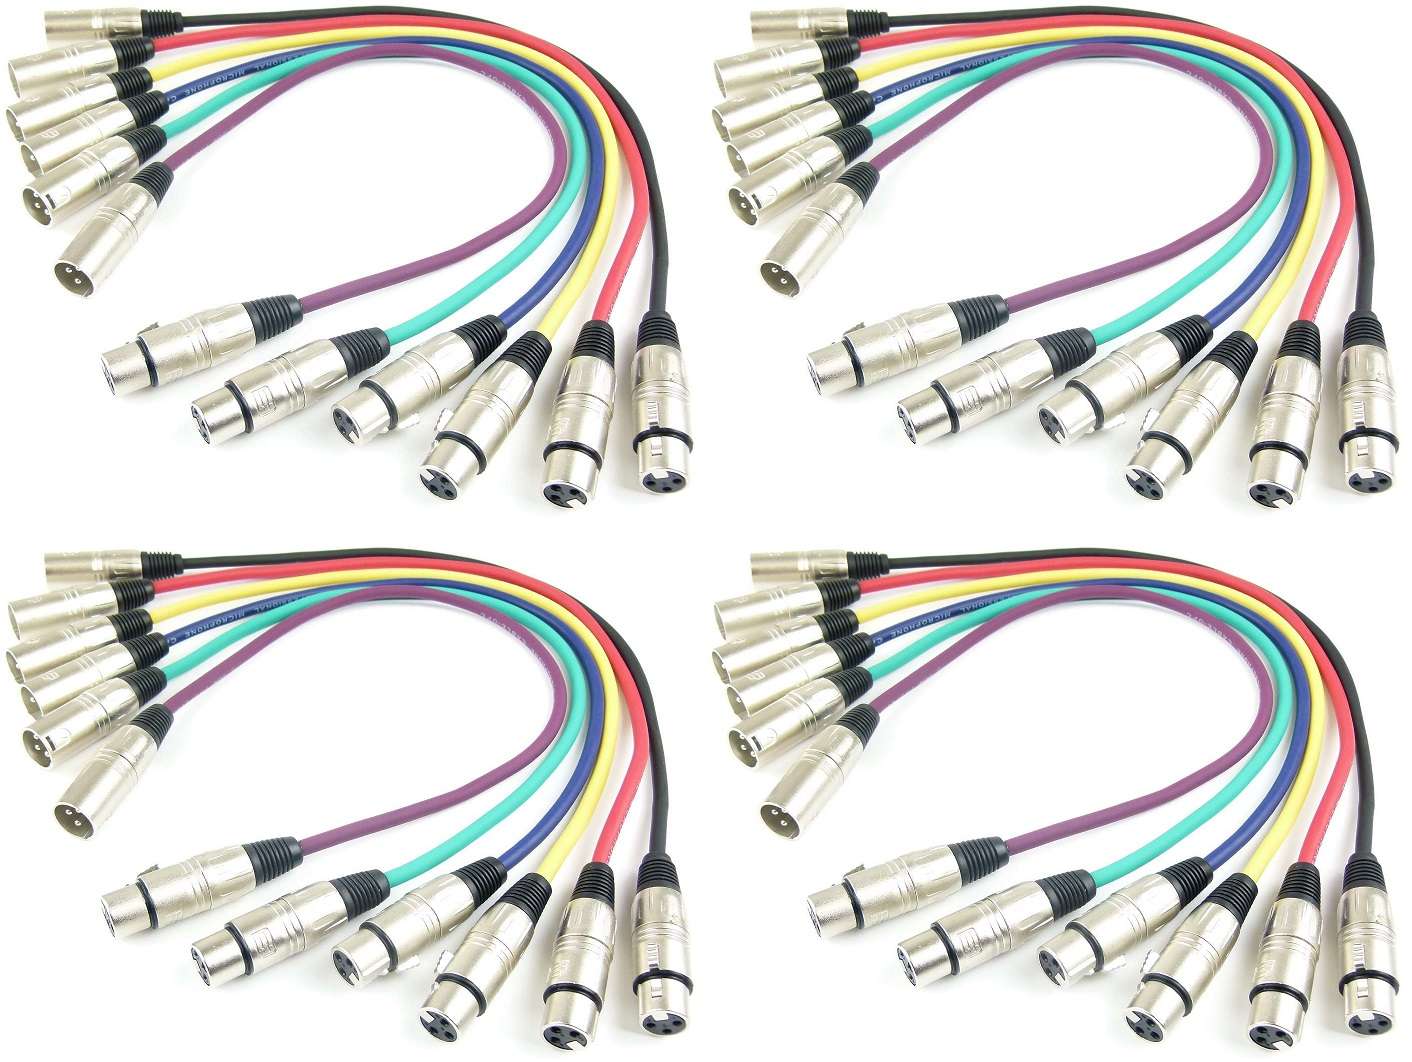 4 Sets Mikrofonkabel 0,5 m XLR 3 pol in 6 Farben DMX Mikrofon Kabel